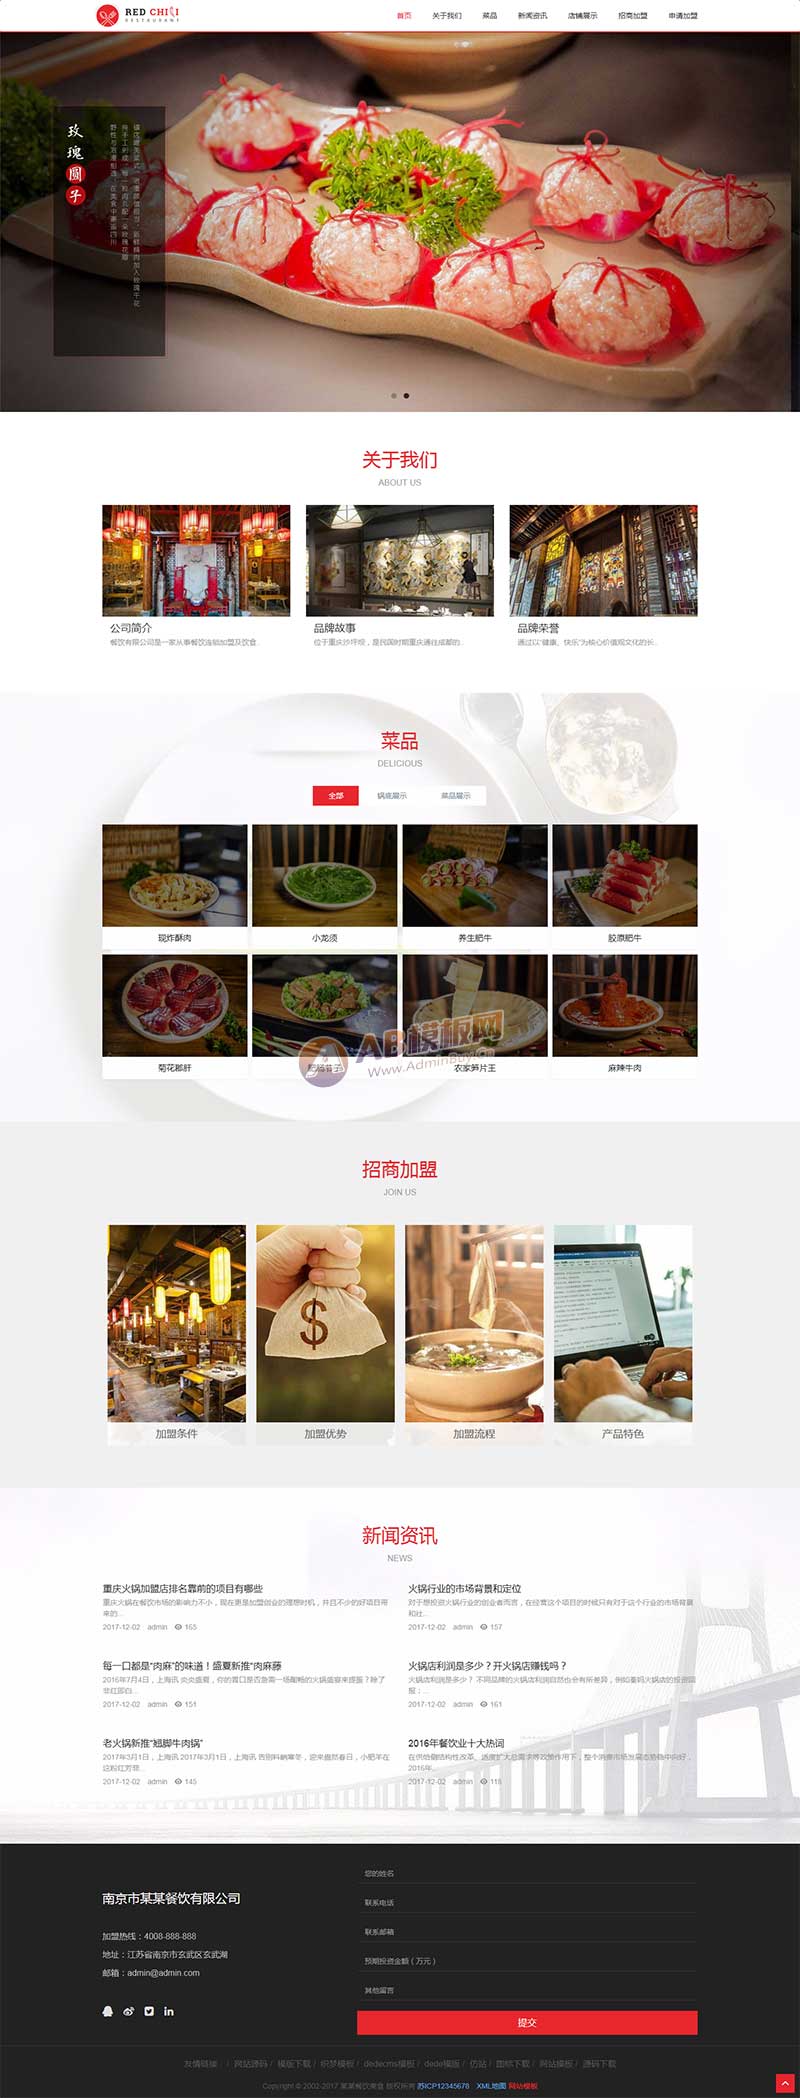 响应式餐饮美食加盟类网站织梦模板 HTML5餐饮加盟管理网站源码